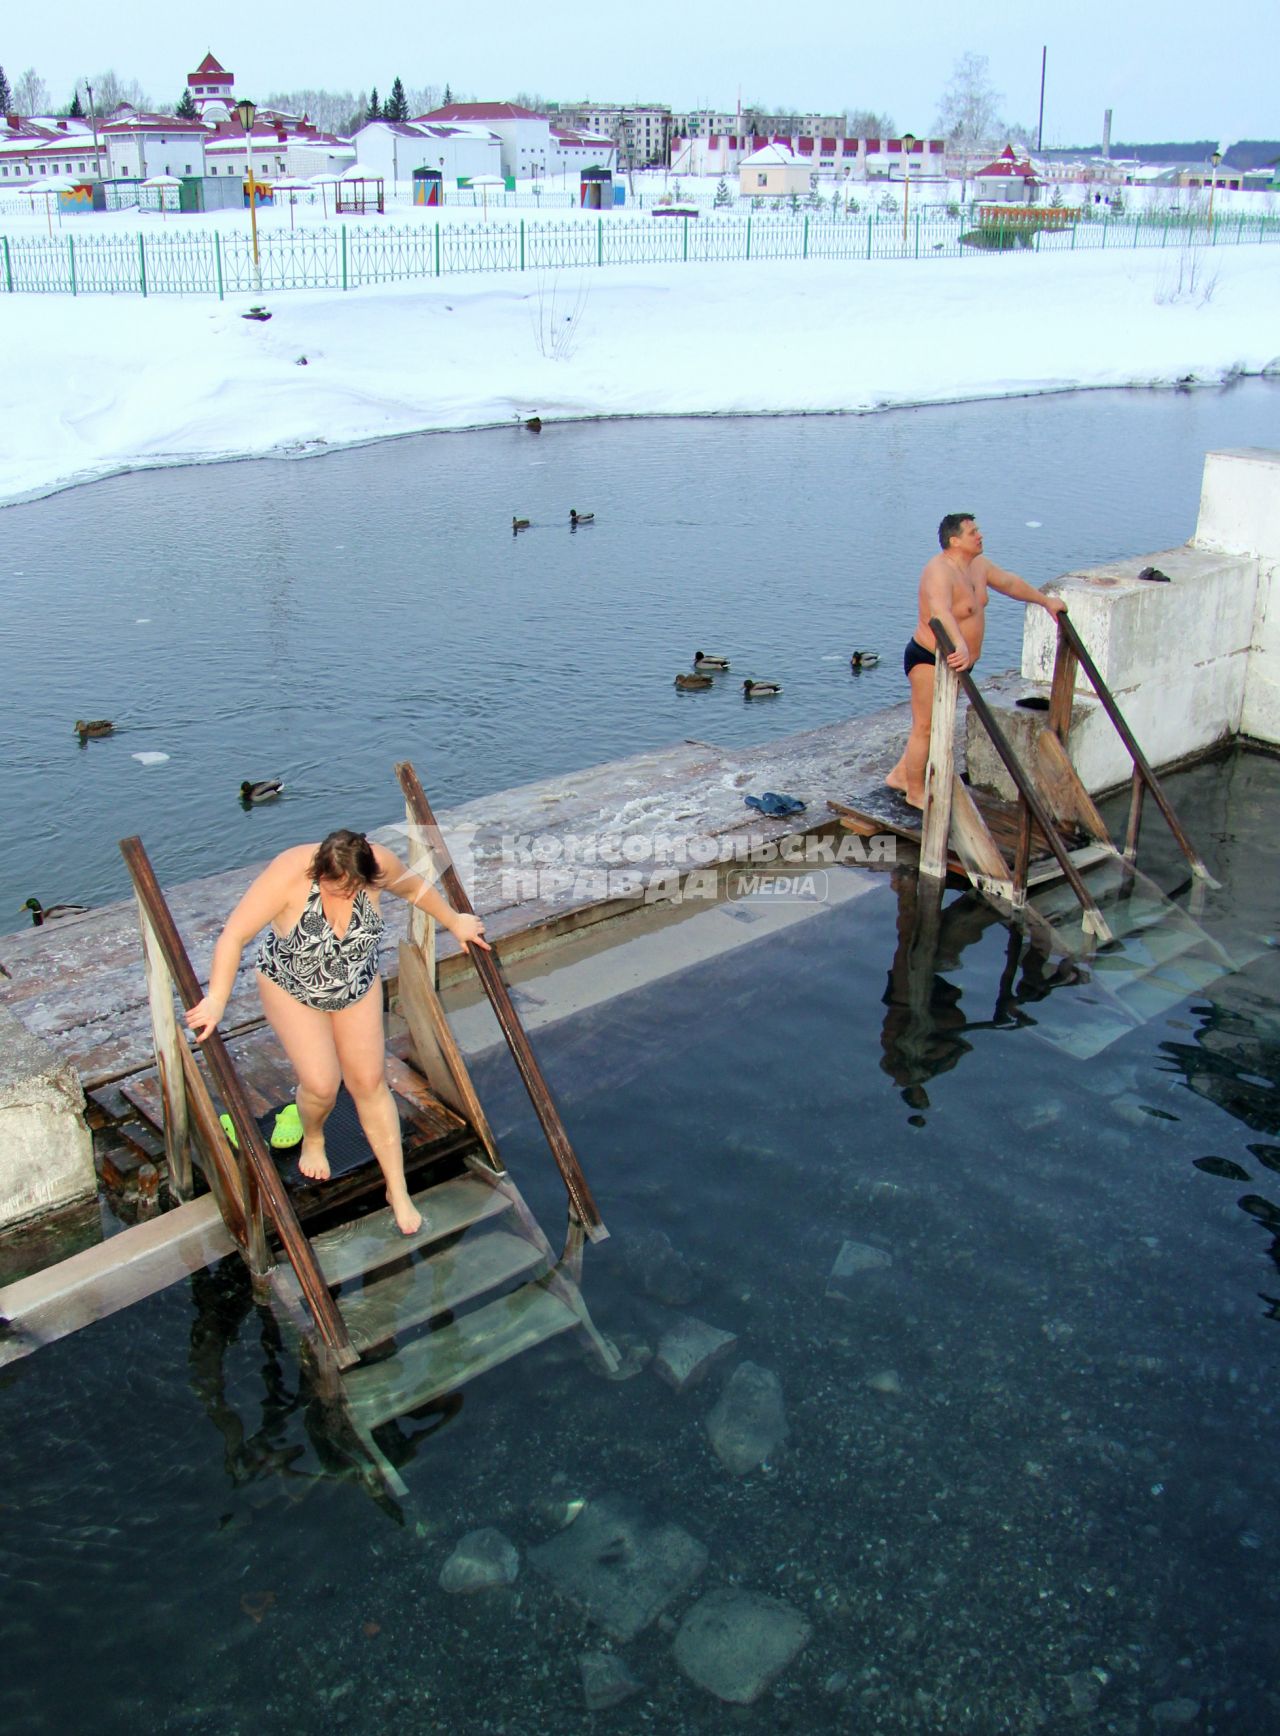 Купания на курорте в Красноусольске в минеральном источнике. Уфимская область. На снимке: мужчина и женщина заходят в купель. 19 января 2012 года.